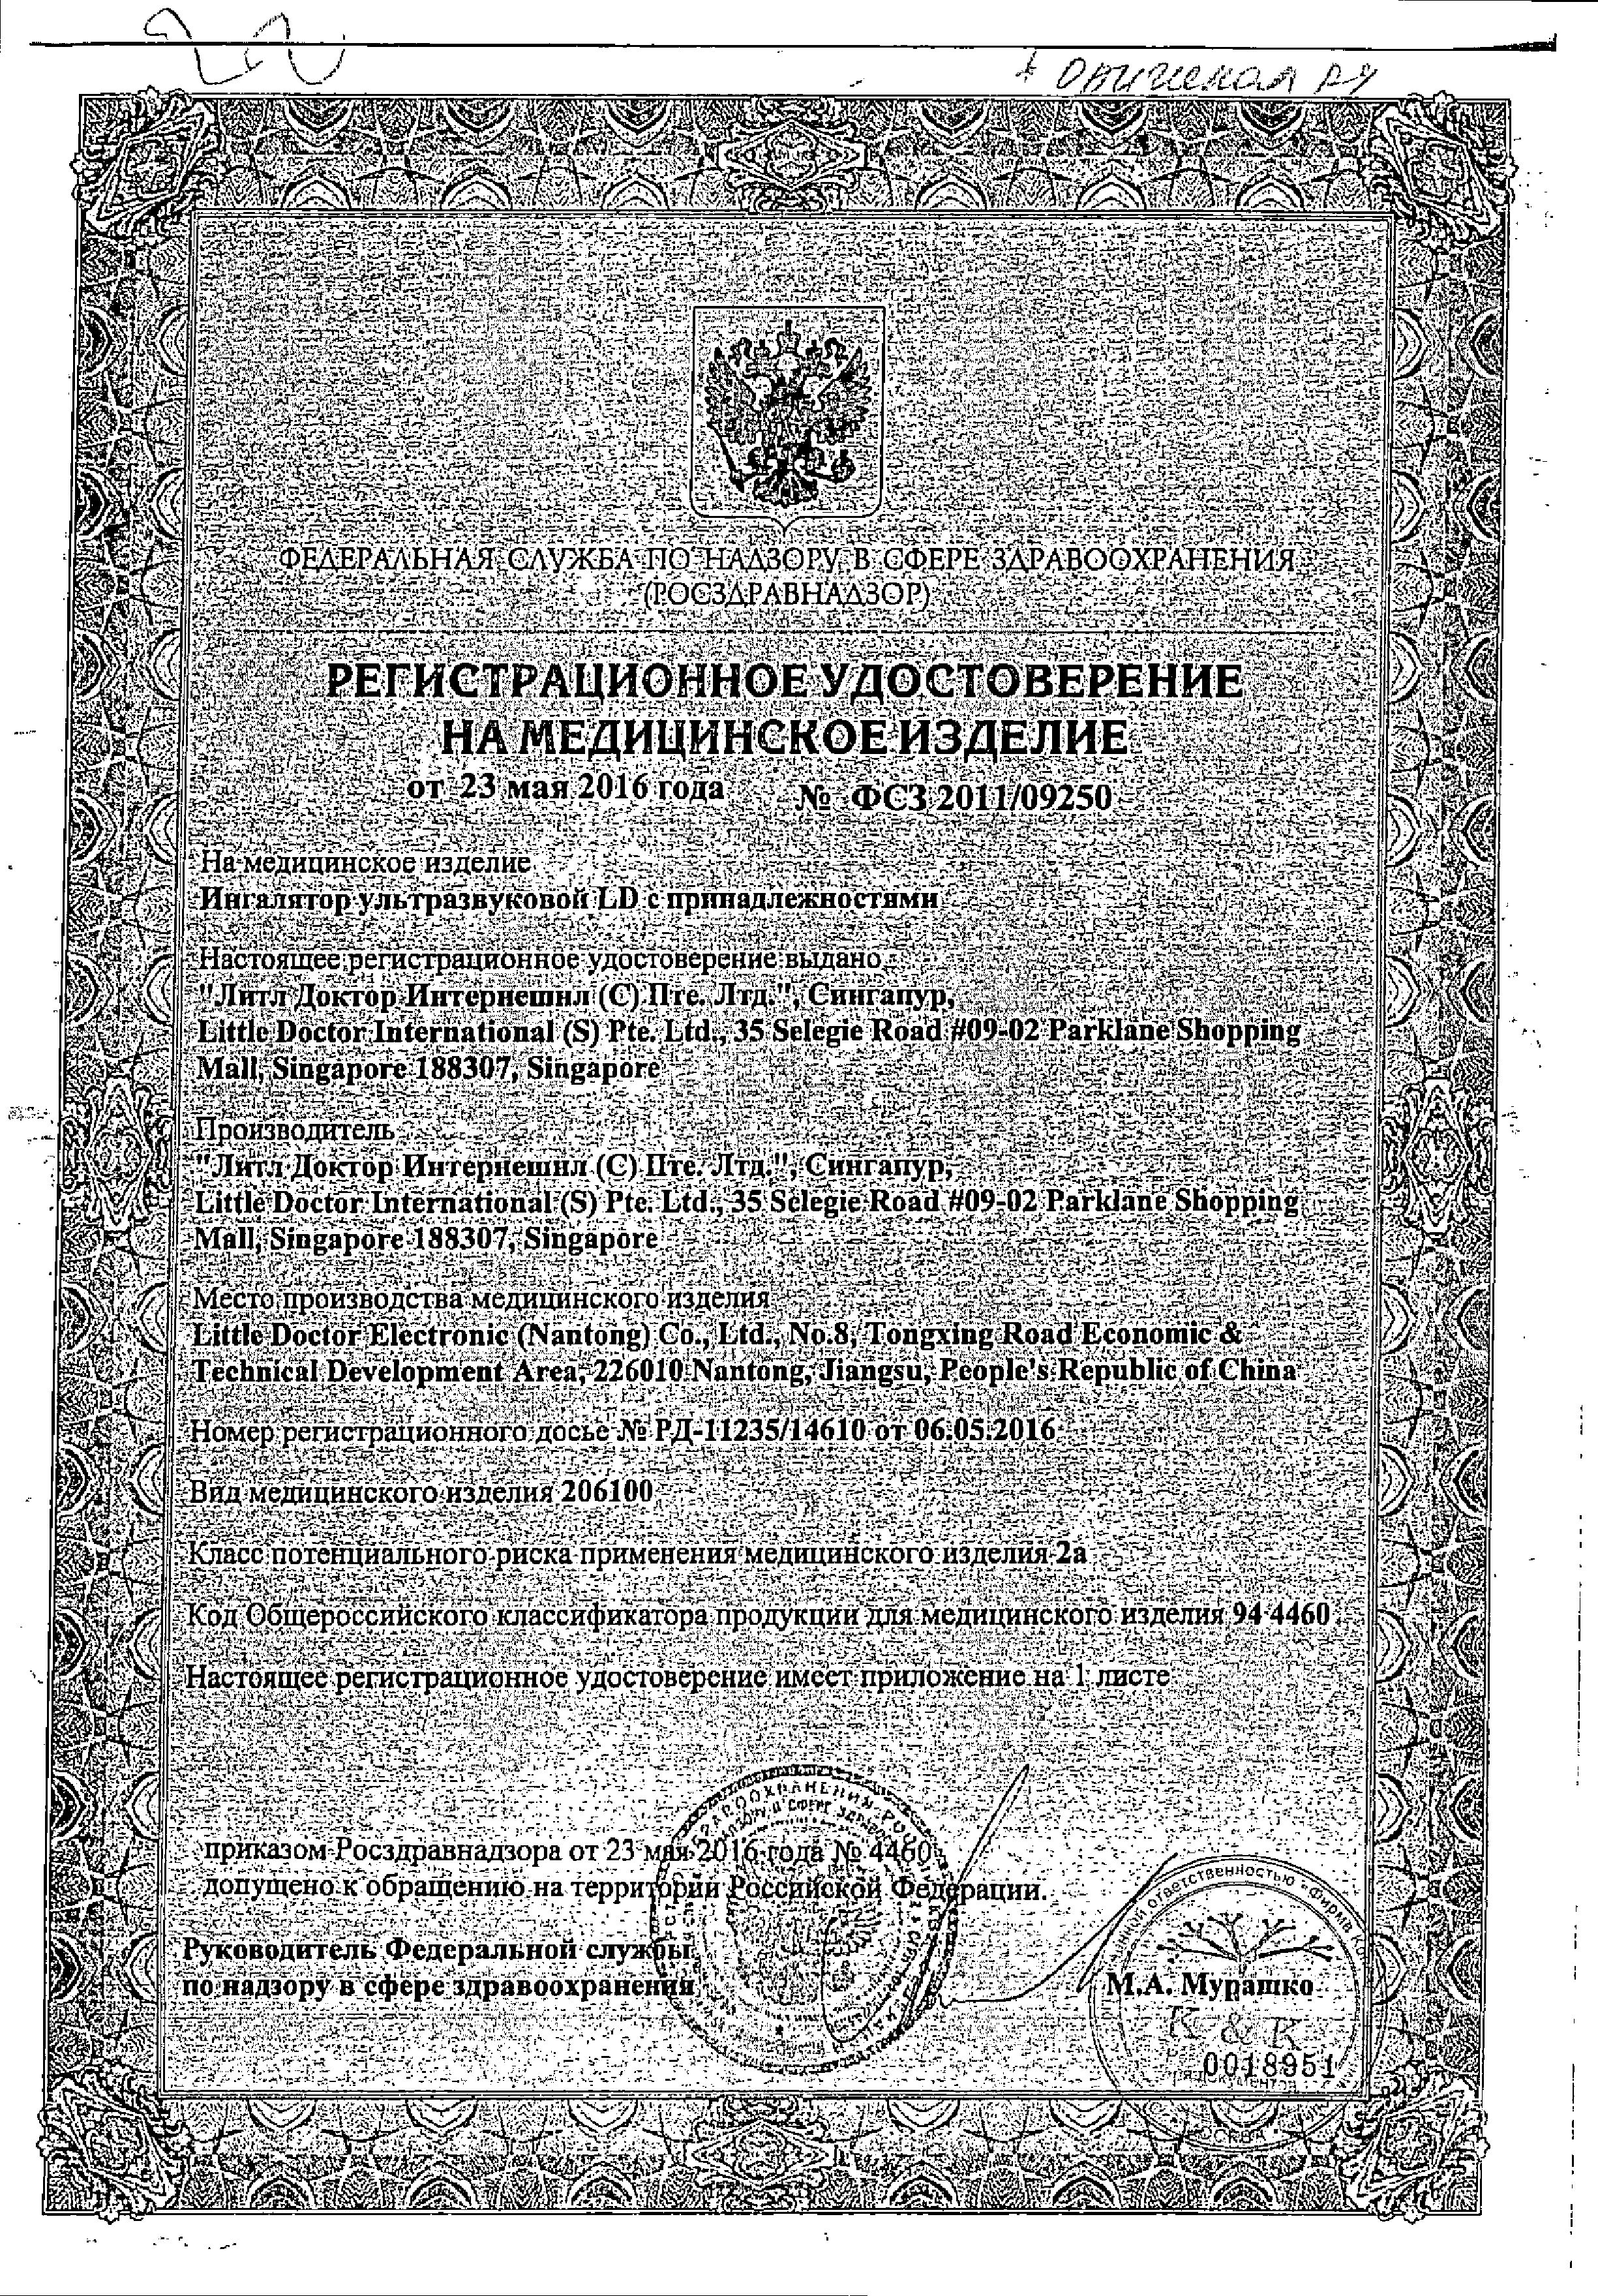 Ингалятор ультразвуковой LD-250U сертификат